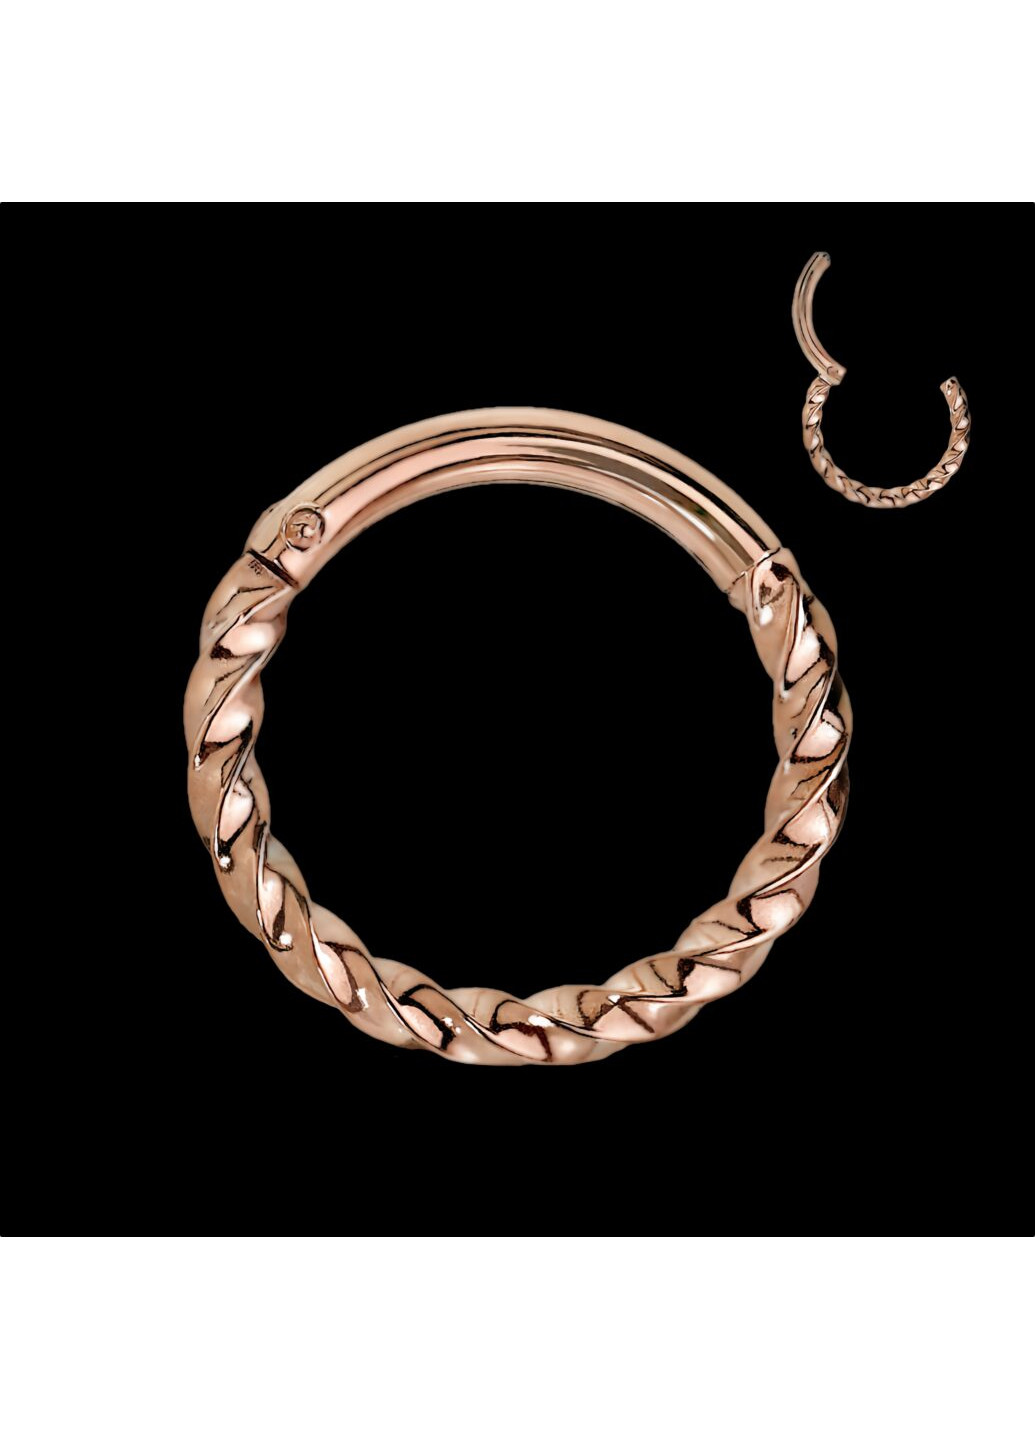 Кільце клікер (сережка) із сталі у вигляді спіралі для пірсингу носа, вуха, трагуса, хелікса, брови, губ колір Метал Spikes (260395442)